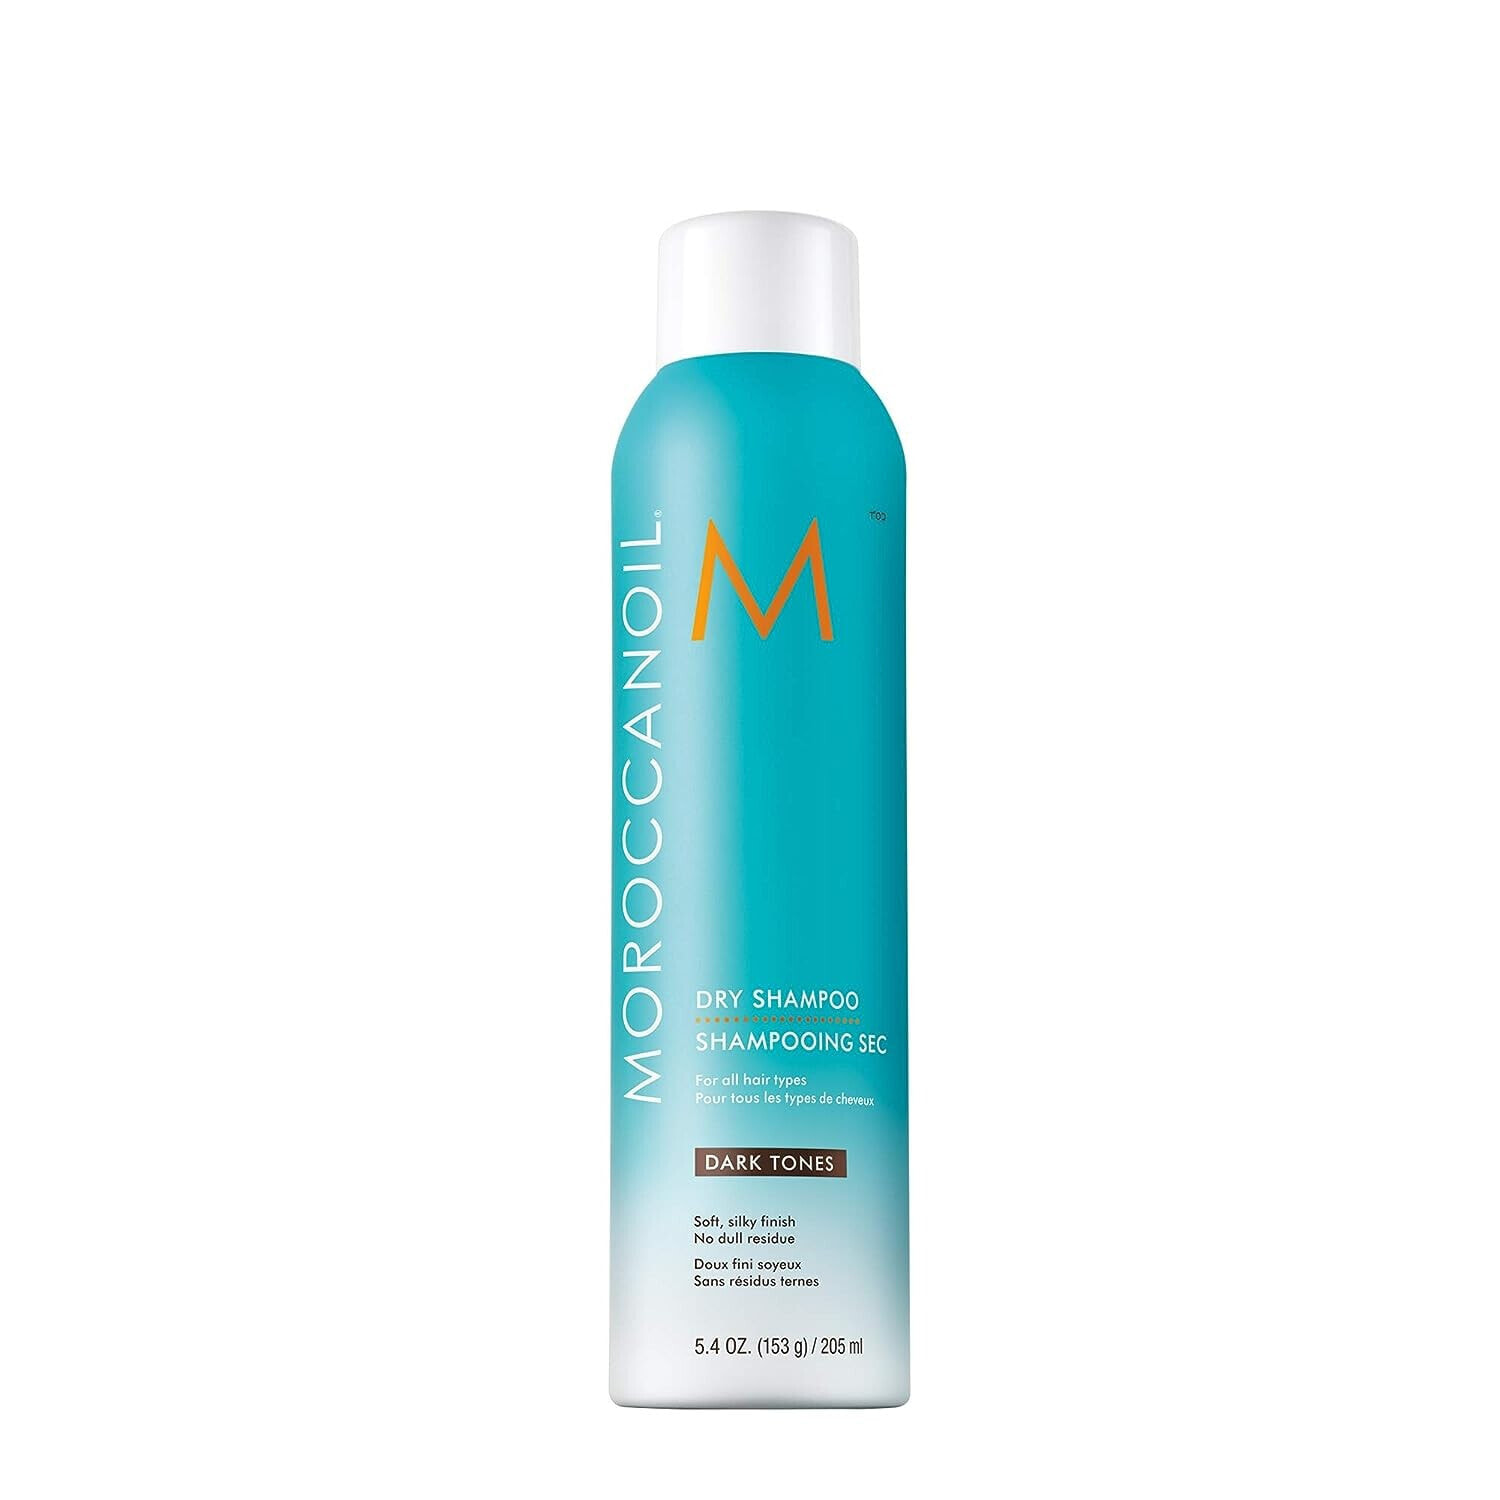 Сухой или твердый шампунь для волос Moroccanoil (Dry Shampoo for Dark Tones) 205 ml